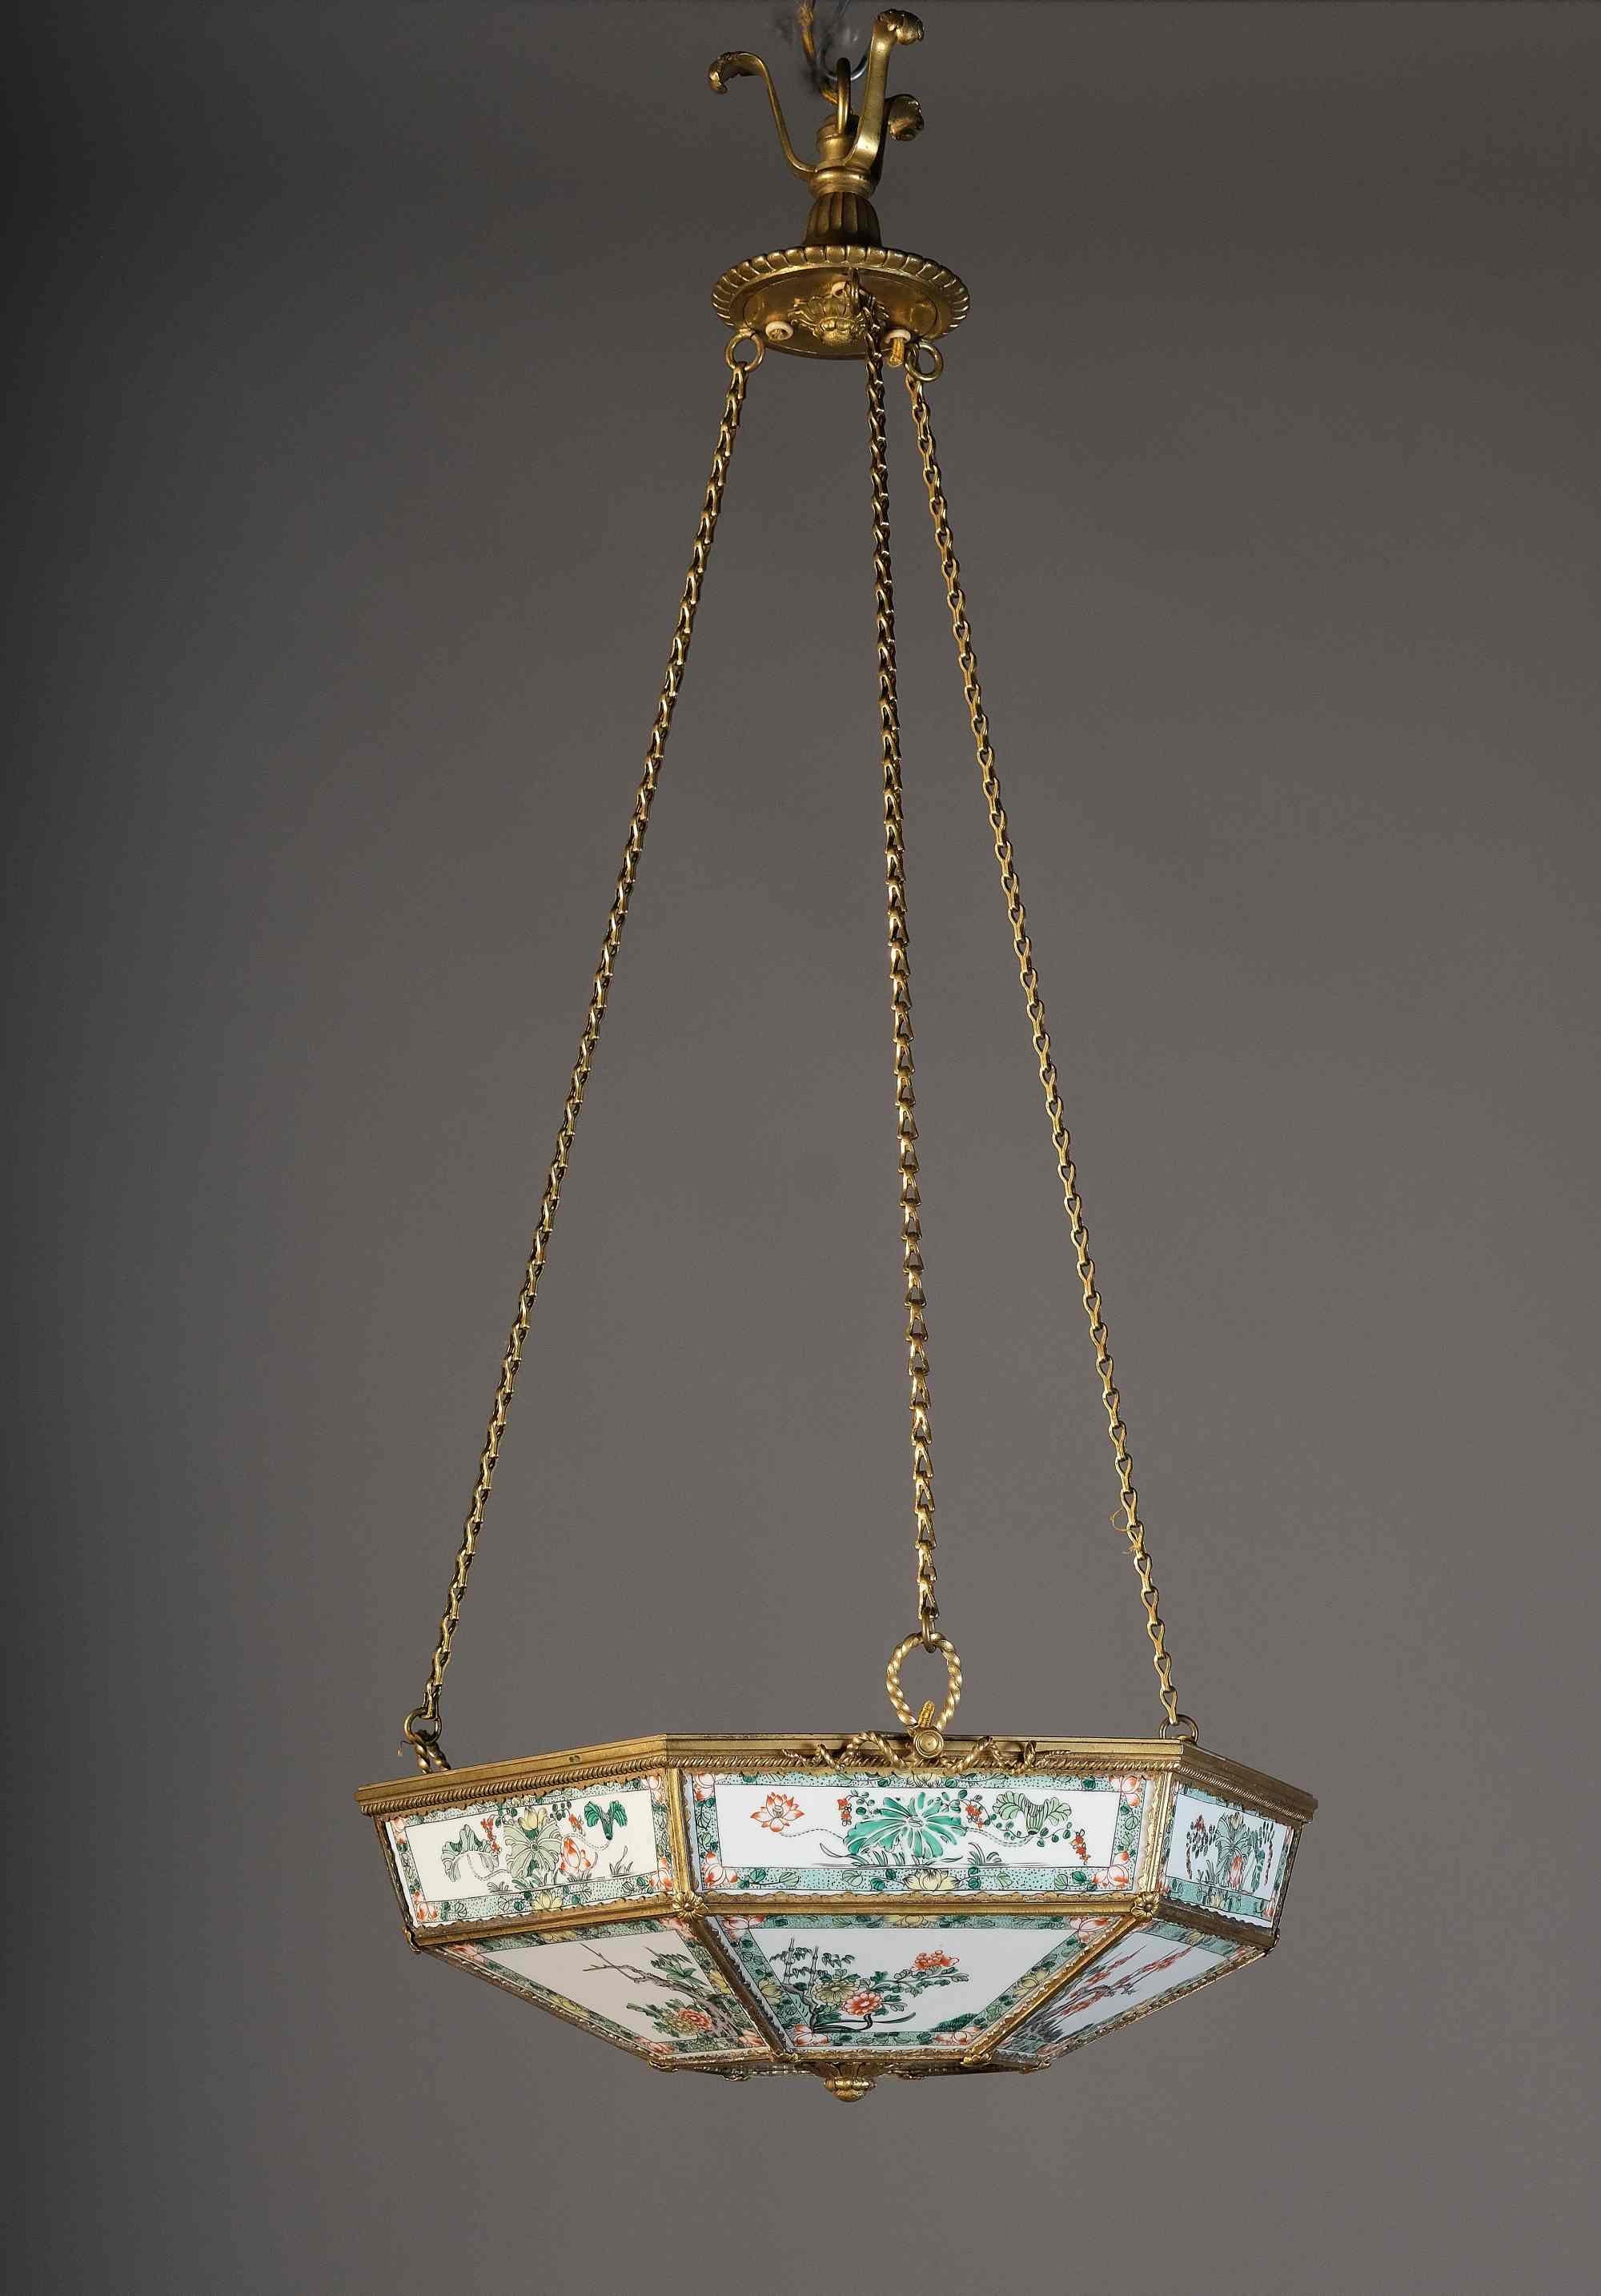 Diese äußerst seltene Lampe besteht aus Kangxi-Porzellanplatten mit einem Rahmen aus vergoldeter Bronze im Stil von Charles X. Die klassischen chinesischen Tafeln sind fein gerahmt und auf der Innenseite mit zarten Blumen- und Laubkompositionen